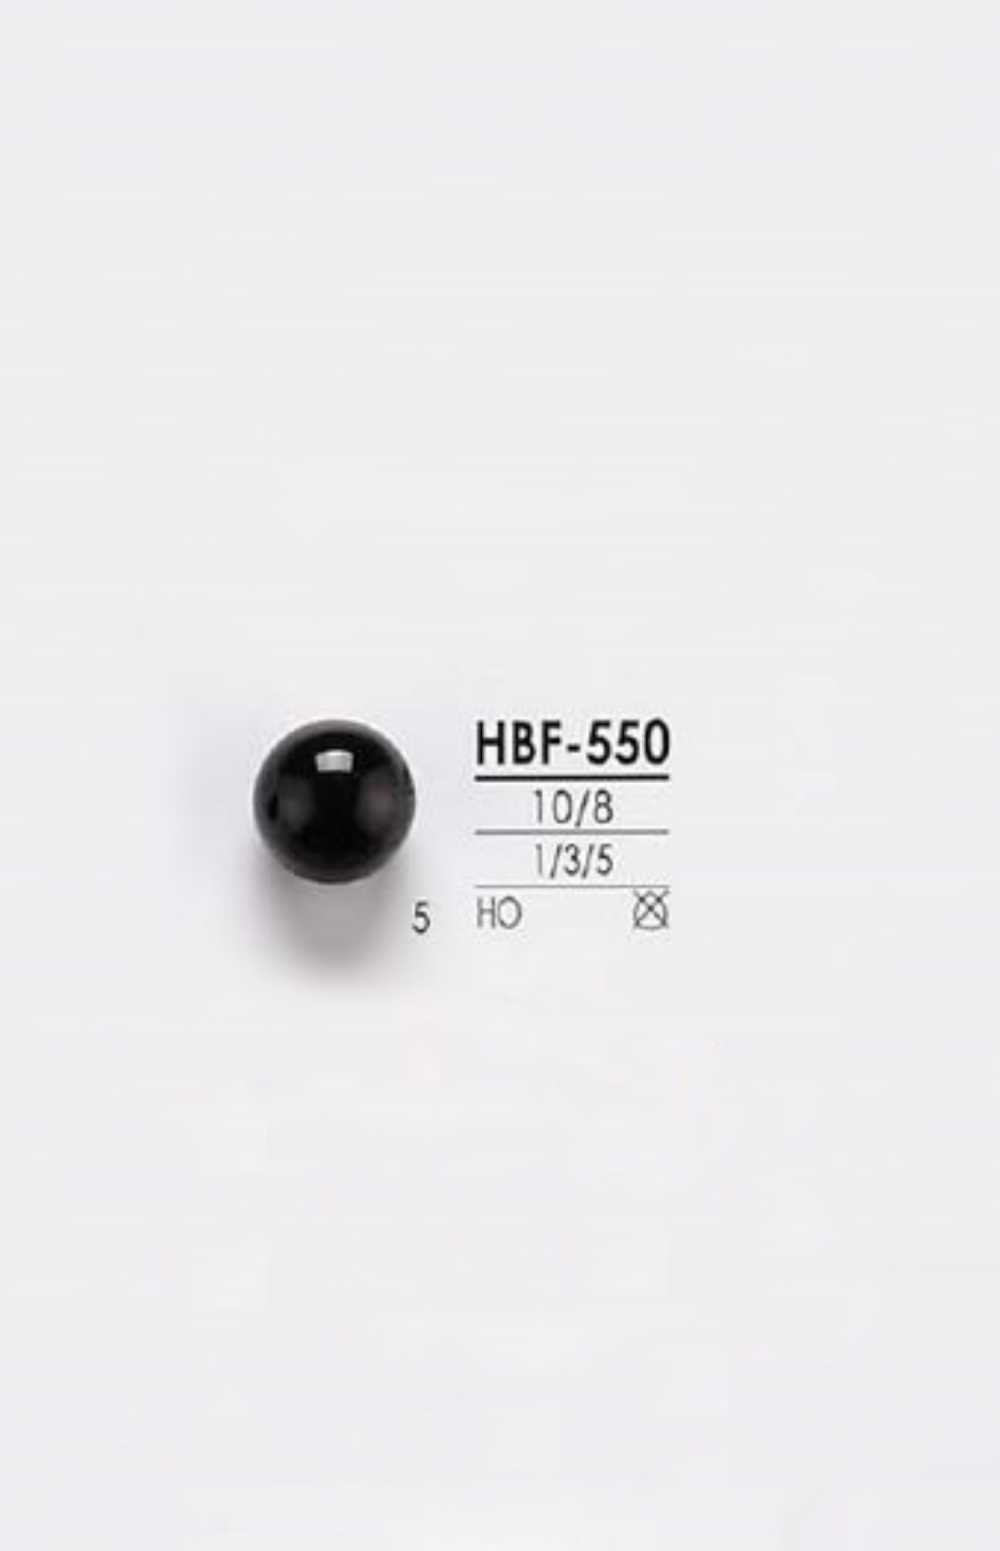 HBF-550 Cúc Chân Hầm Sừng Trâu IRIS